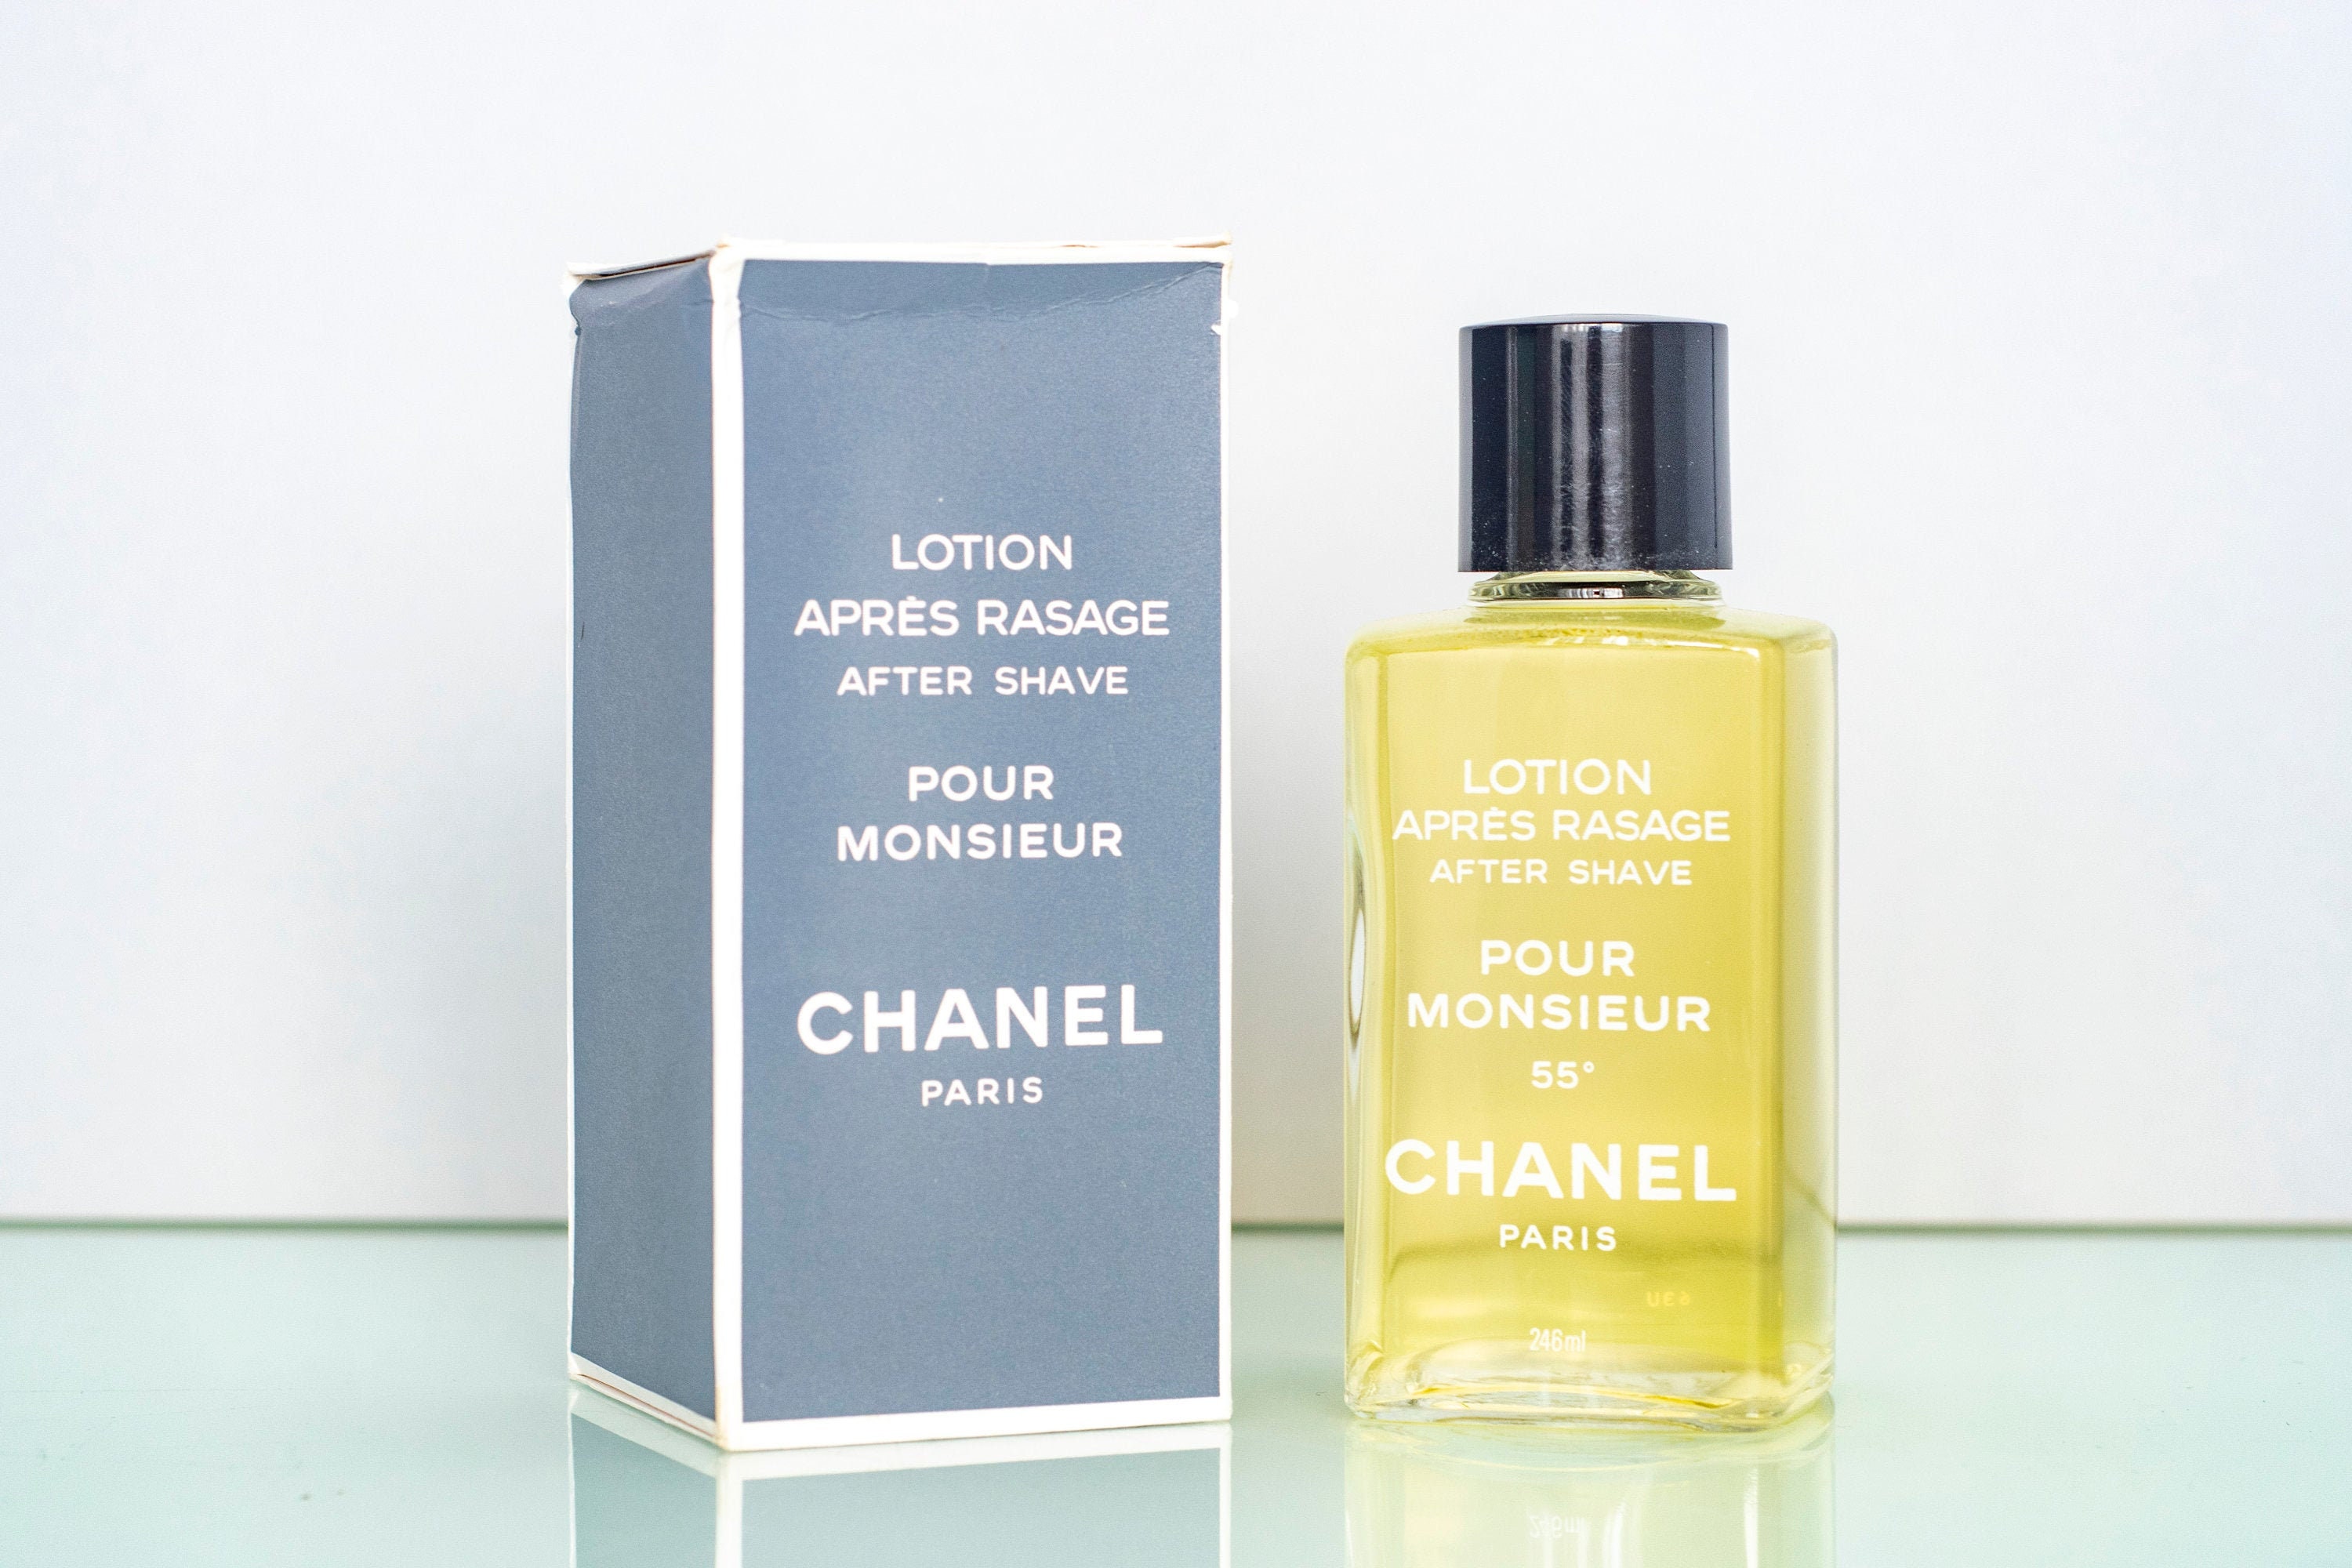 Chanel Pour Monsieur - Eau de Parfum (tester with cap)